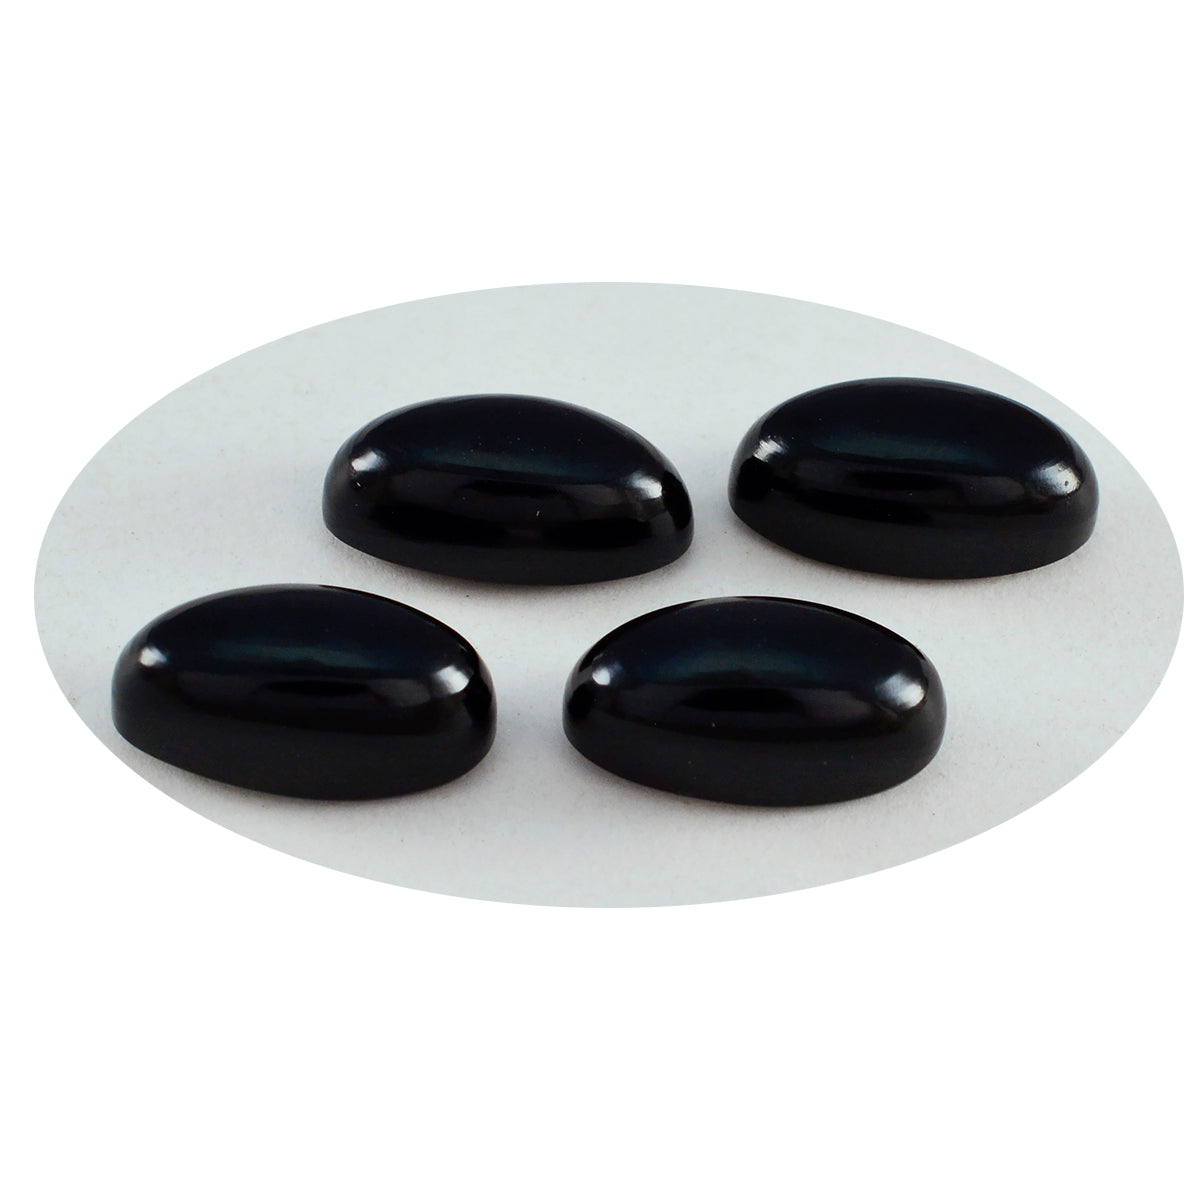 riyogems 1шт кабошон из черного оникса 7x14 мм овальной формы, довольно качественный свободный драгоценный камень